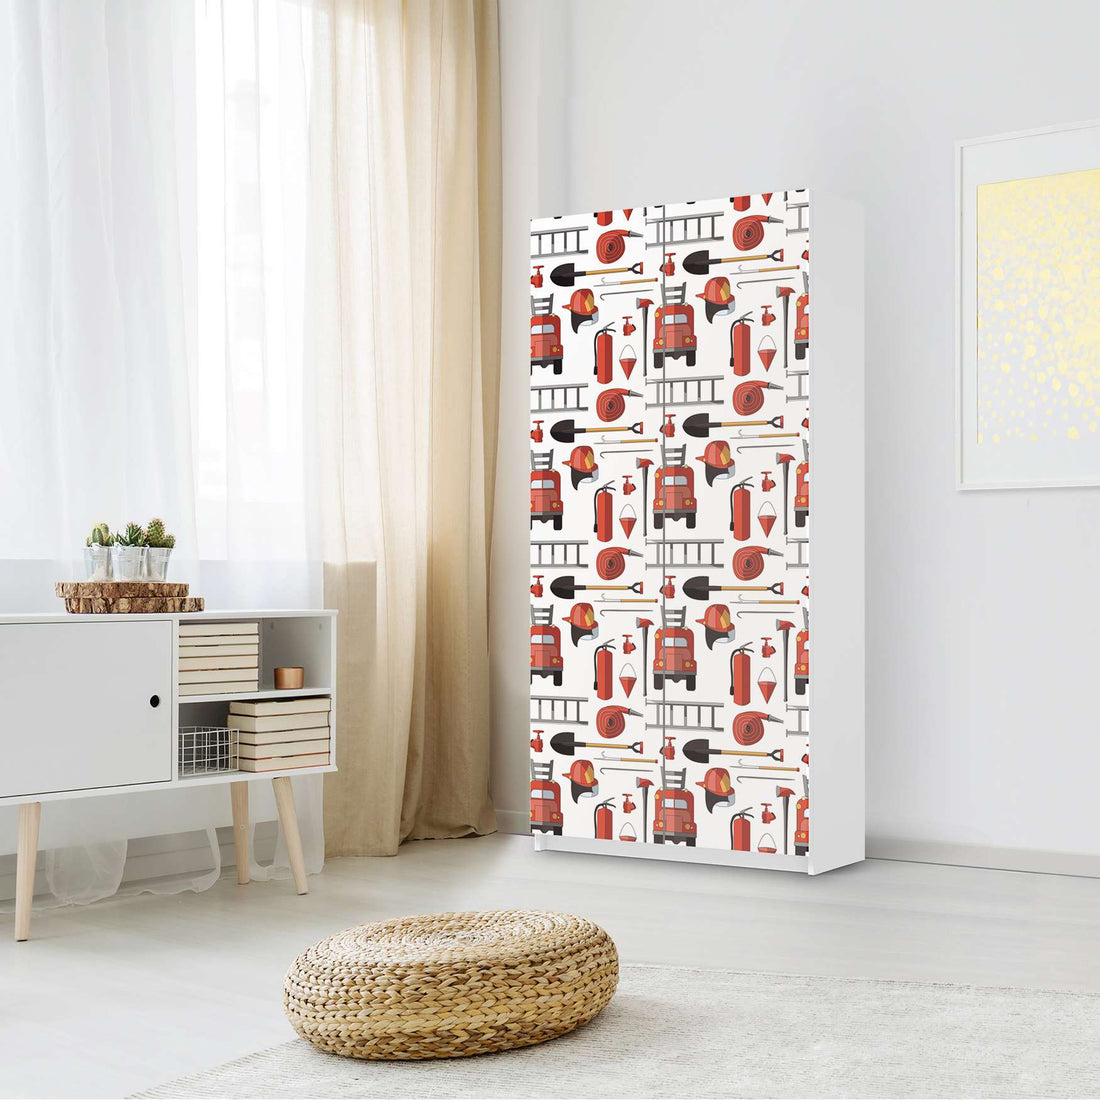 Klebefolie für Möbel Firefighter - IKEA Pax Schrank 201 cm Höhe - 2 Türen - Kinderzimmer